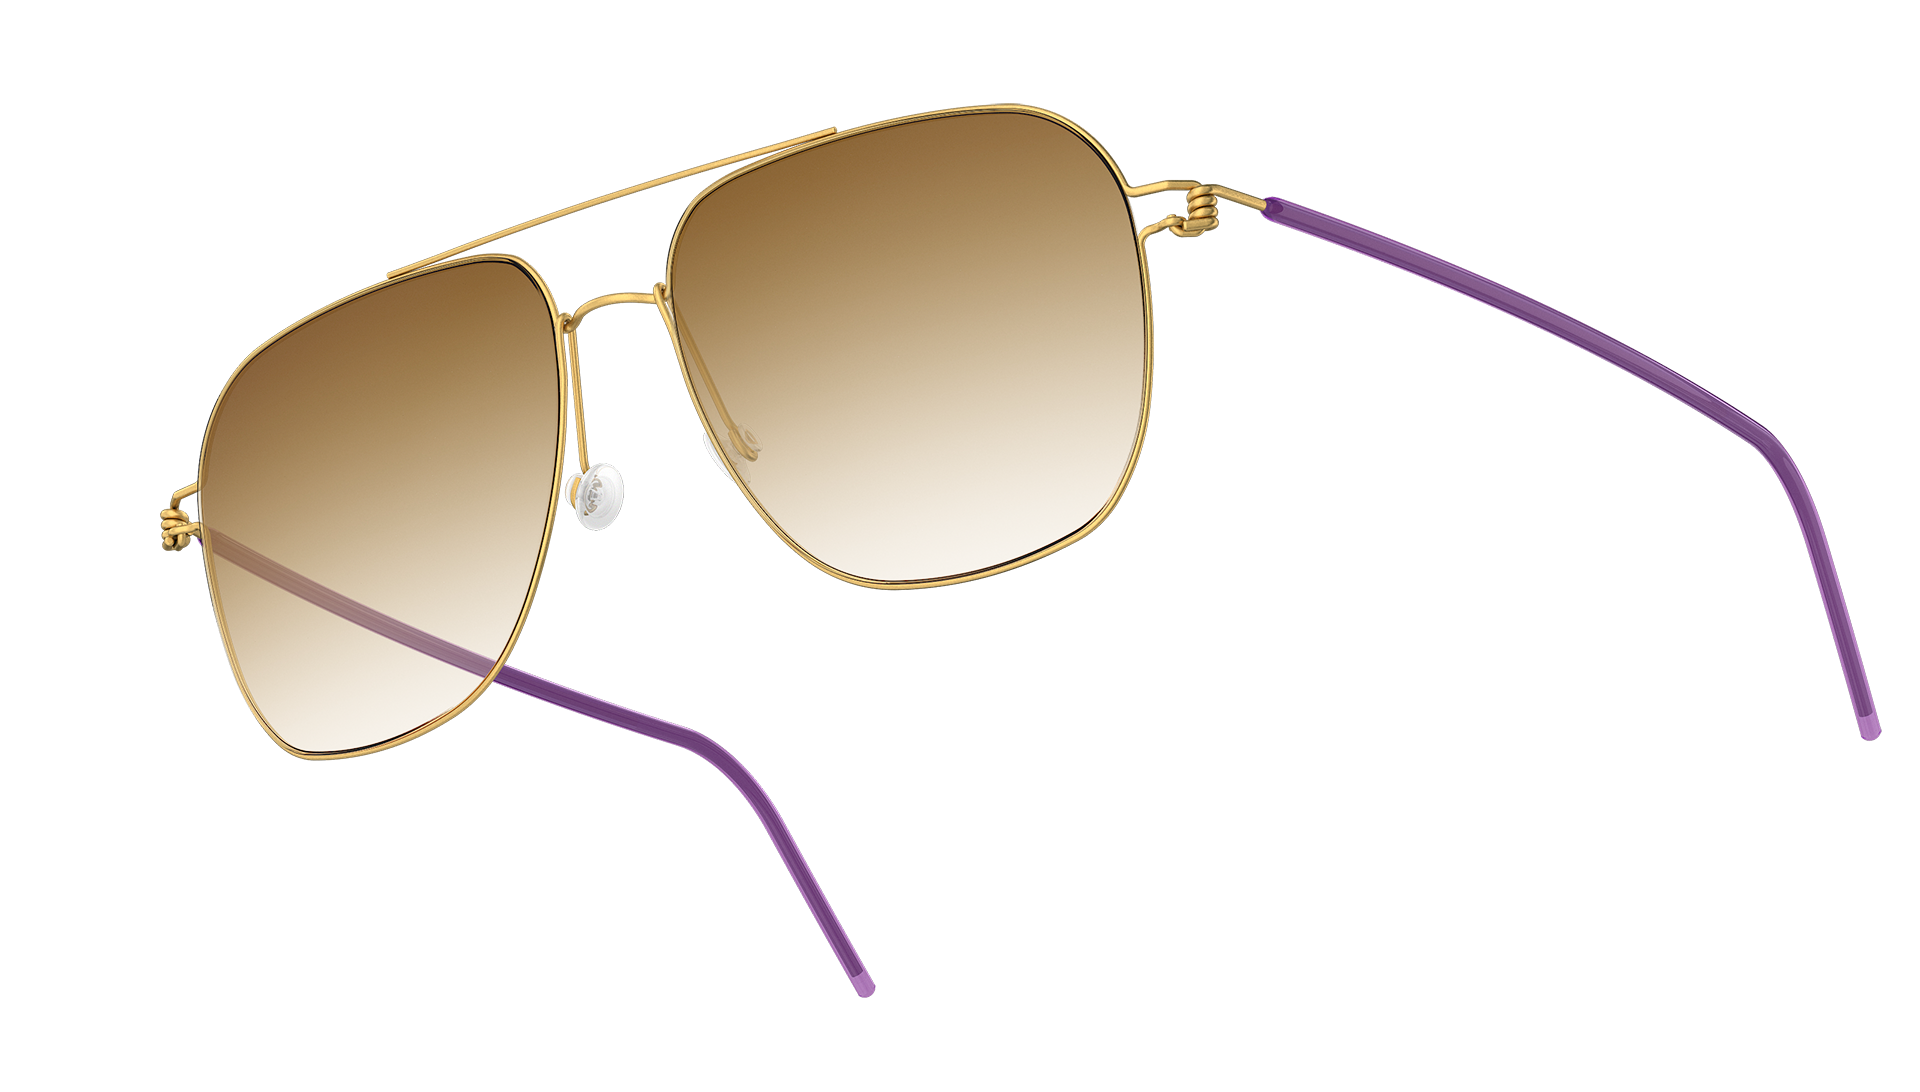 LINDBERG sun titanium, Modell 8210 PGT, Pilotenbrille in Gold mit abgerundeten Gläsern und lila Bügelüberzügen